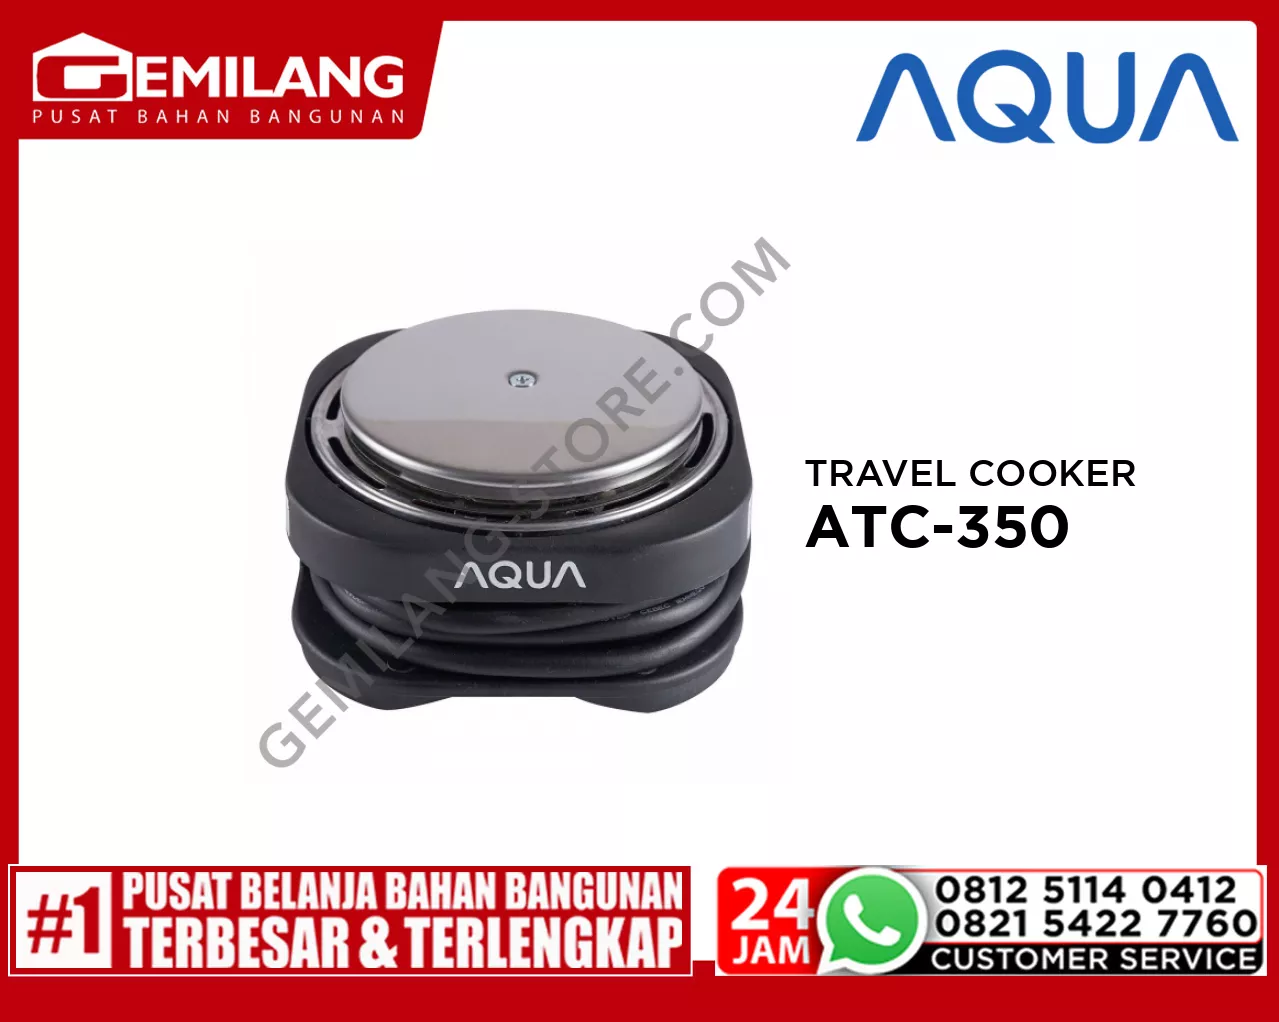 AQUA TRAVEL COOKER ATC-350